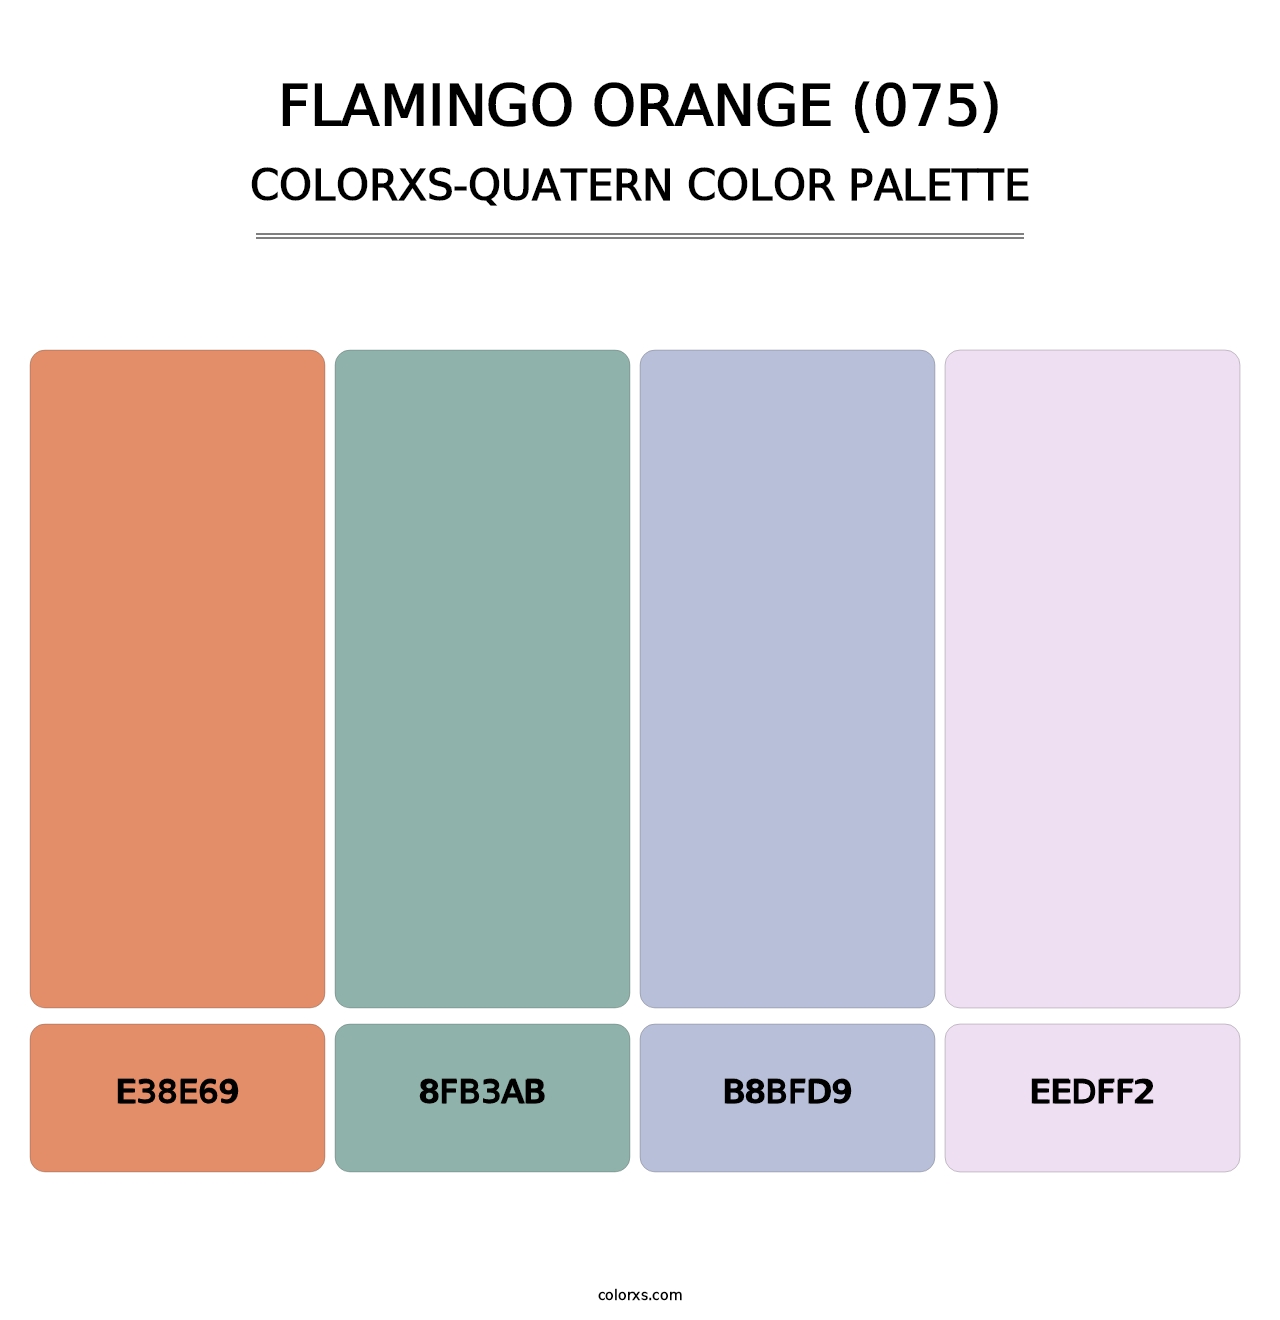 Flamingo Orange (075) - Colorxs Quatern Palette